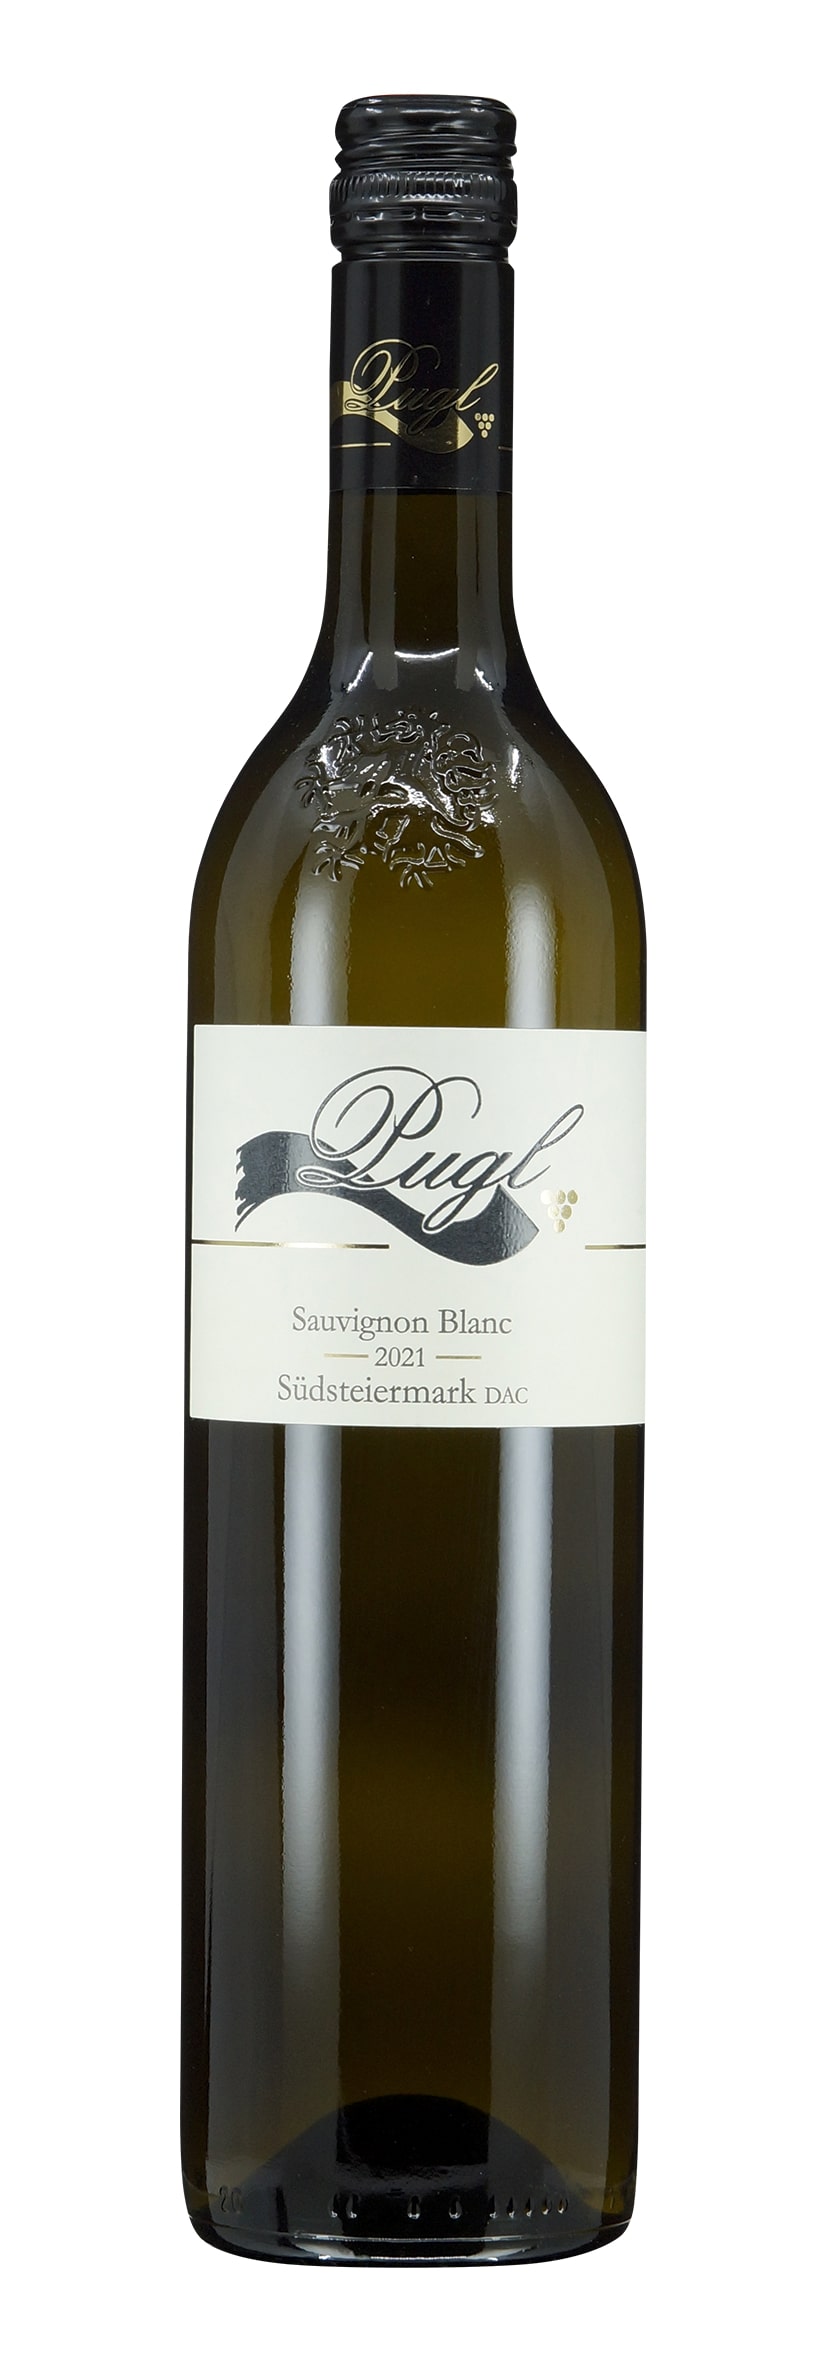 Südsteiermark DAC Sauvignon Blanc 2021